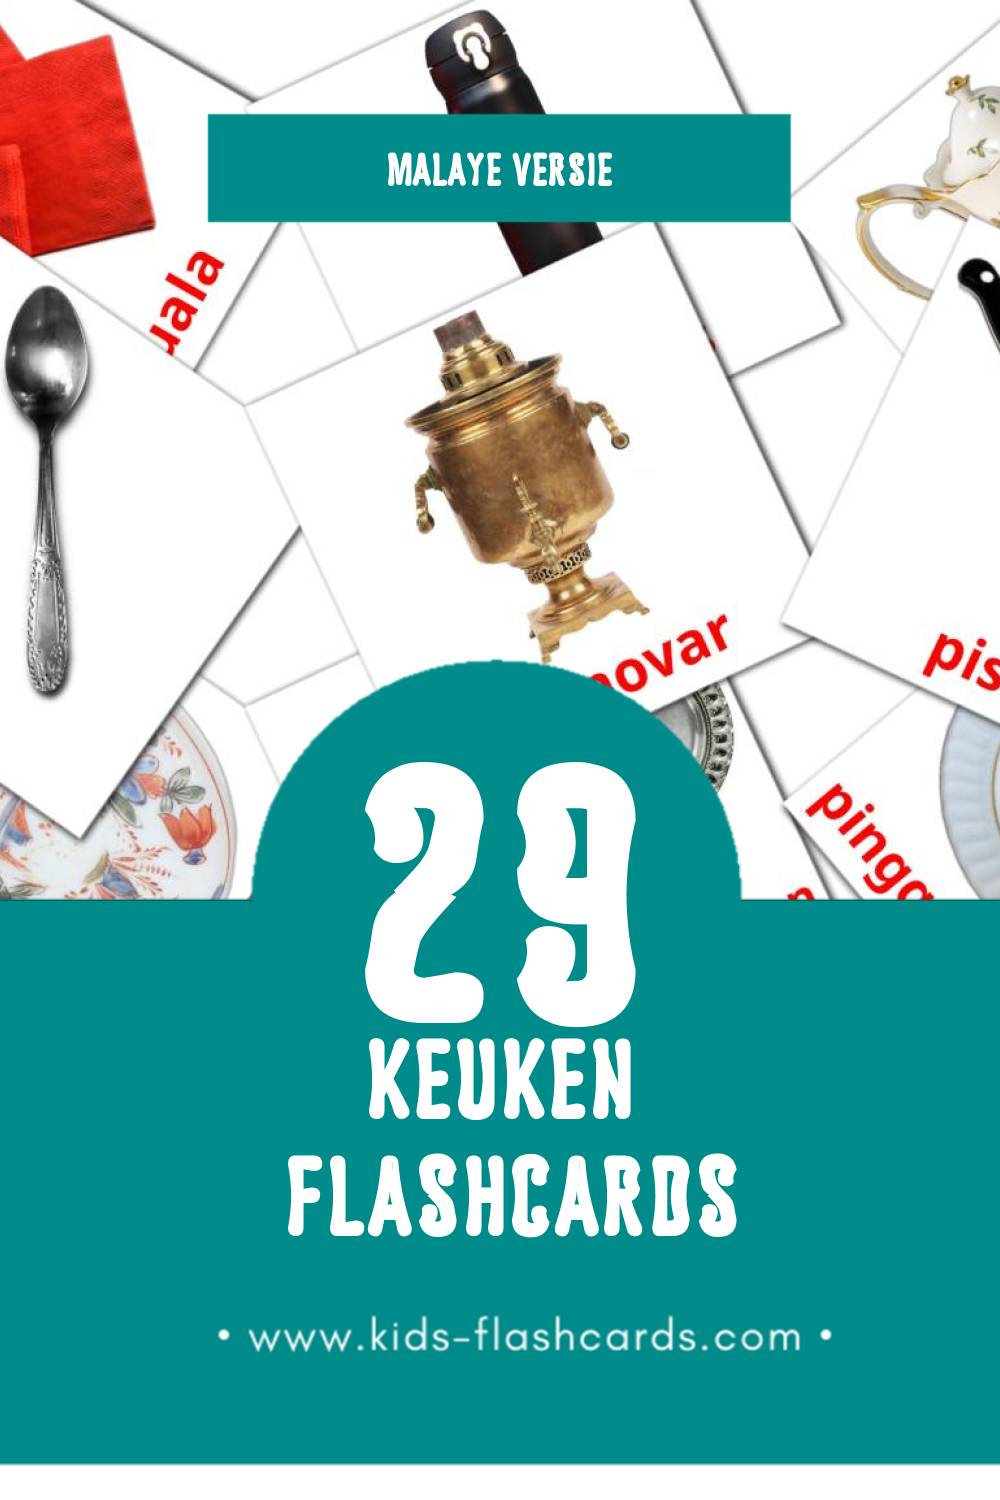 Visuele Dapur Flashcards voor Kleuters (29 kaarten in het Malay)